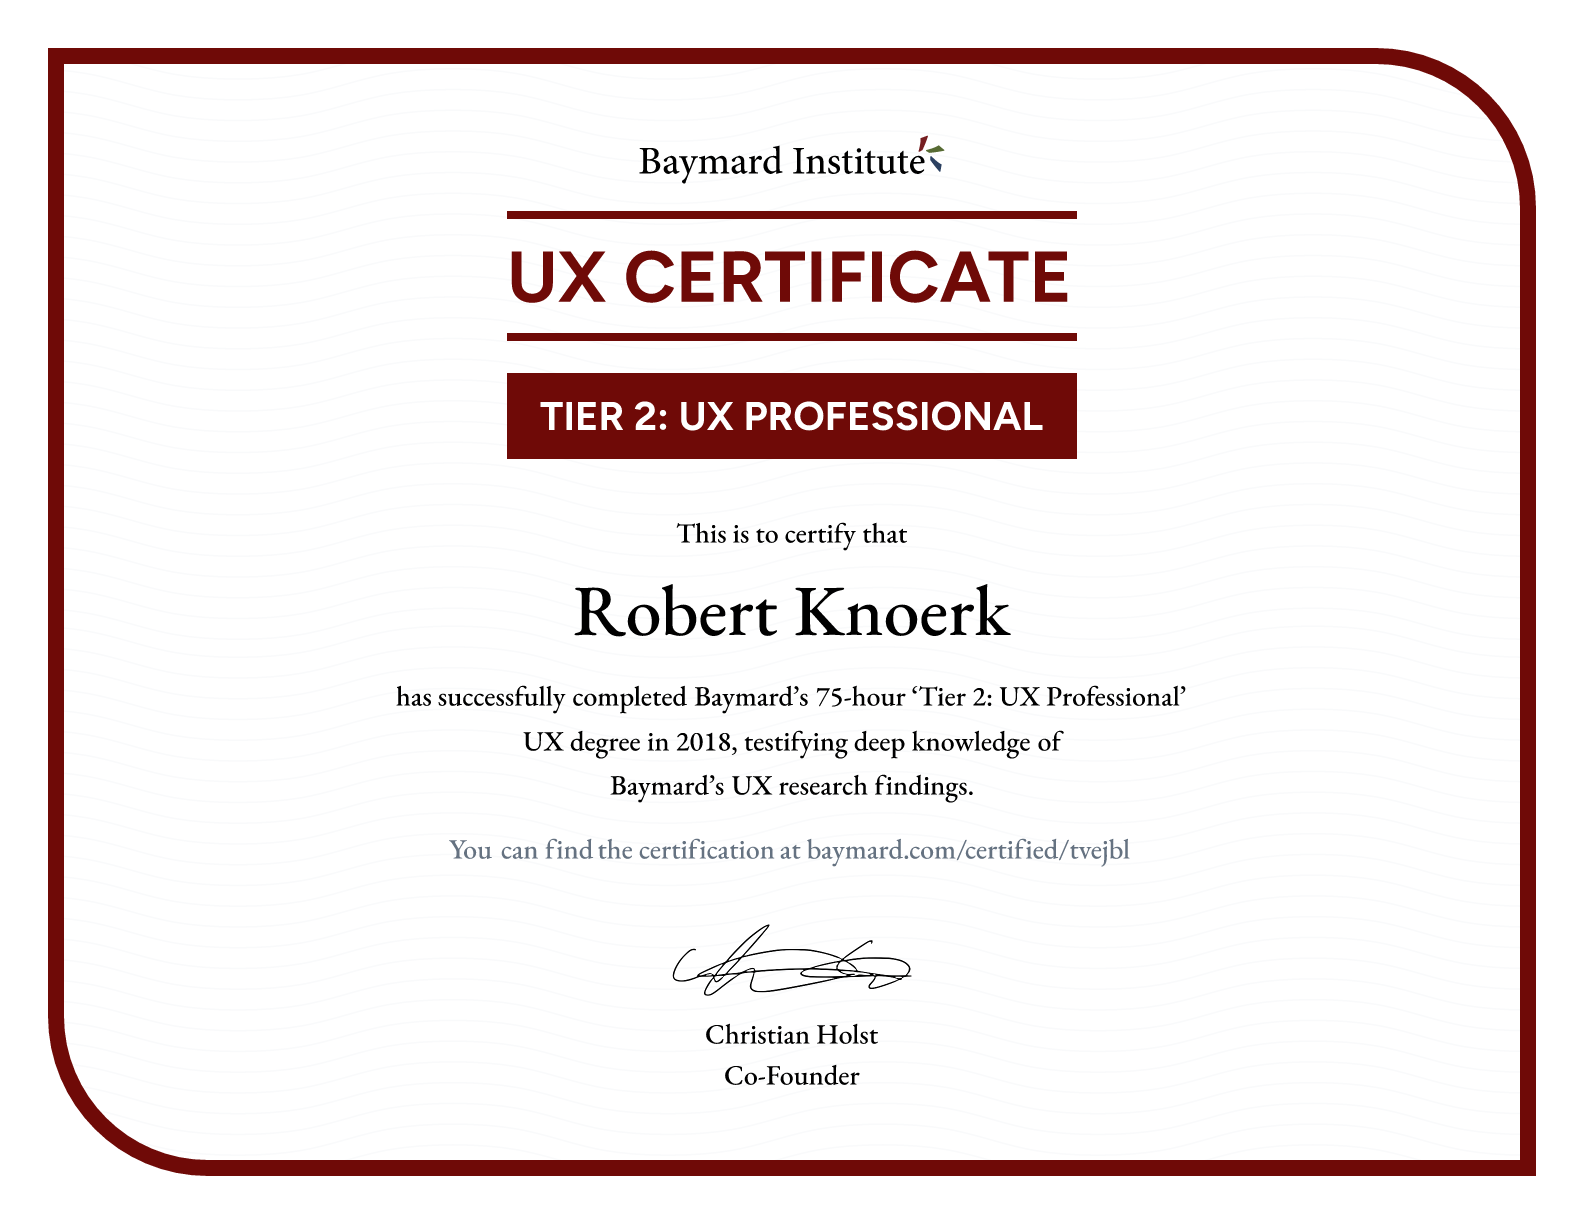 Robert Knoerk’s certificate